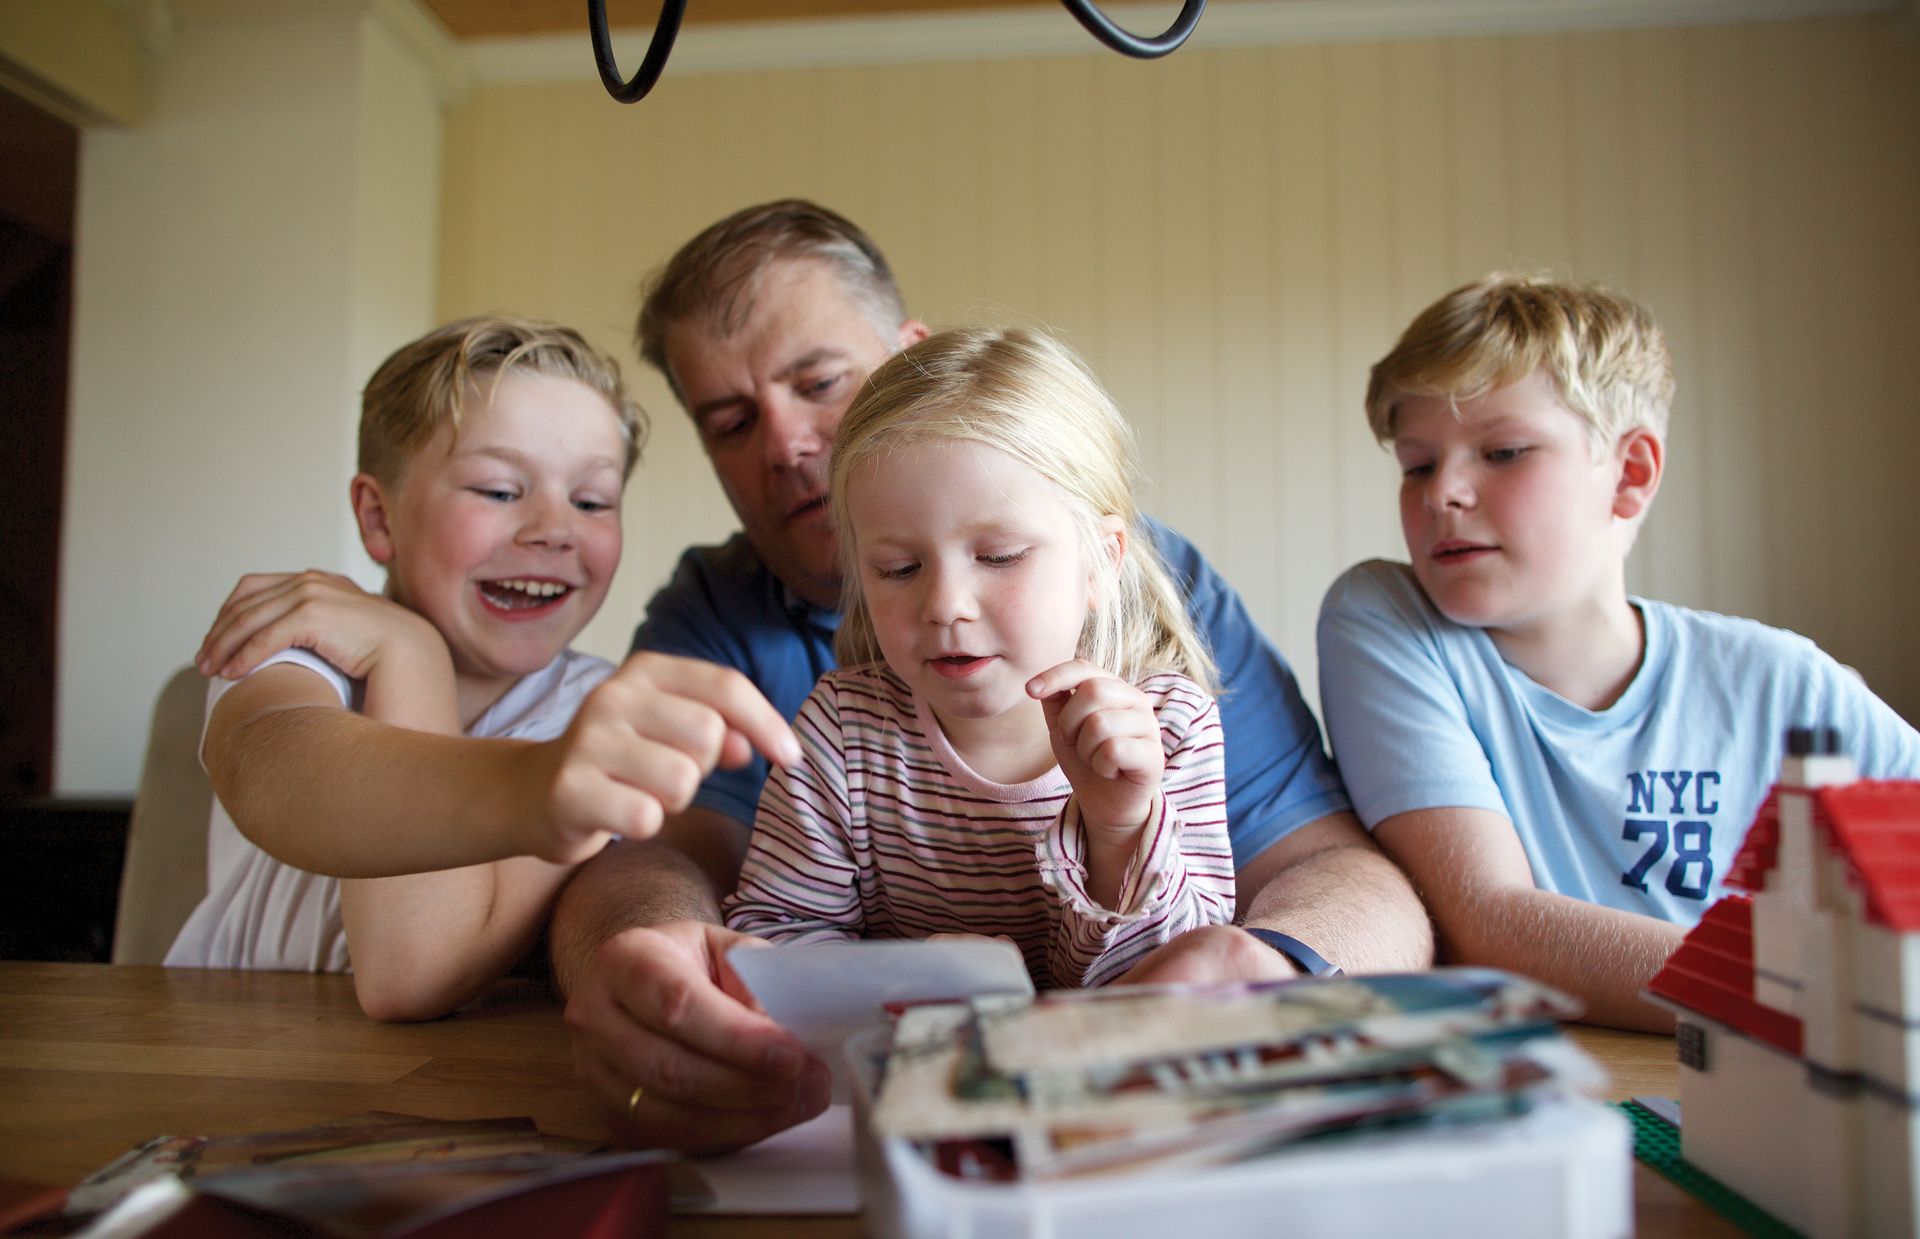 Кристиан и его дети рассматривают семейные фотографии. Кристиан благодарен за возможность создать связь между его детьми и их предками.